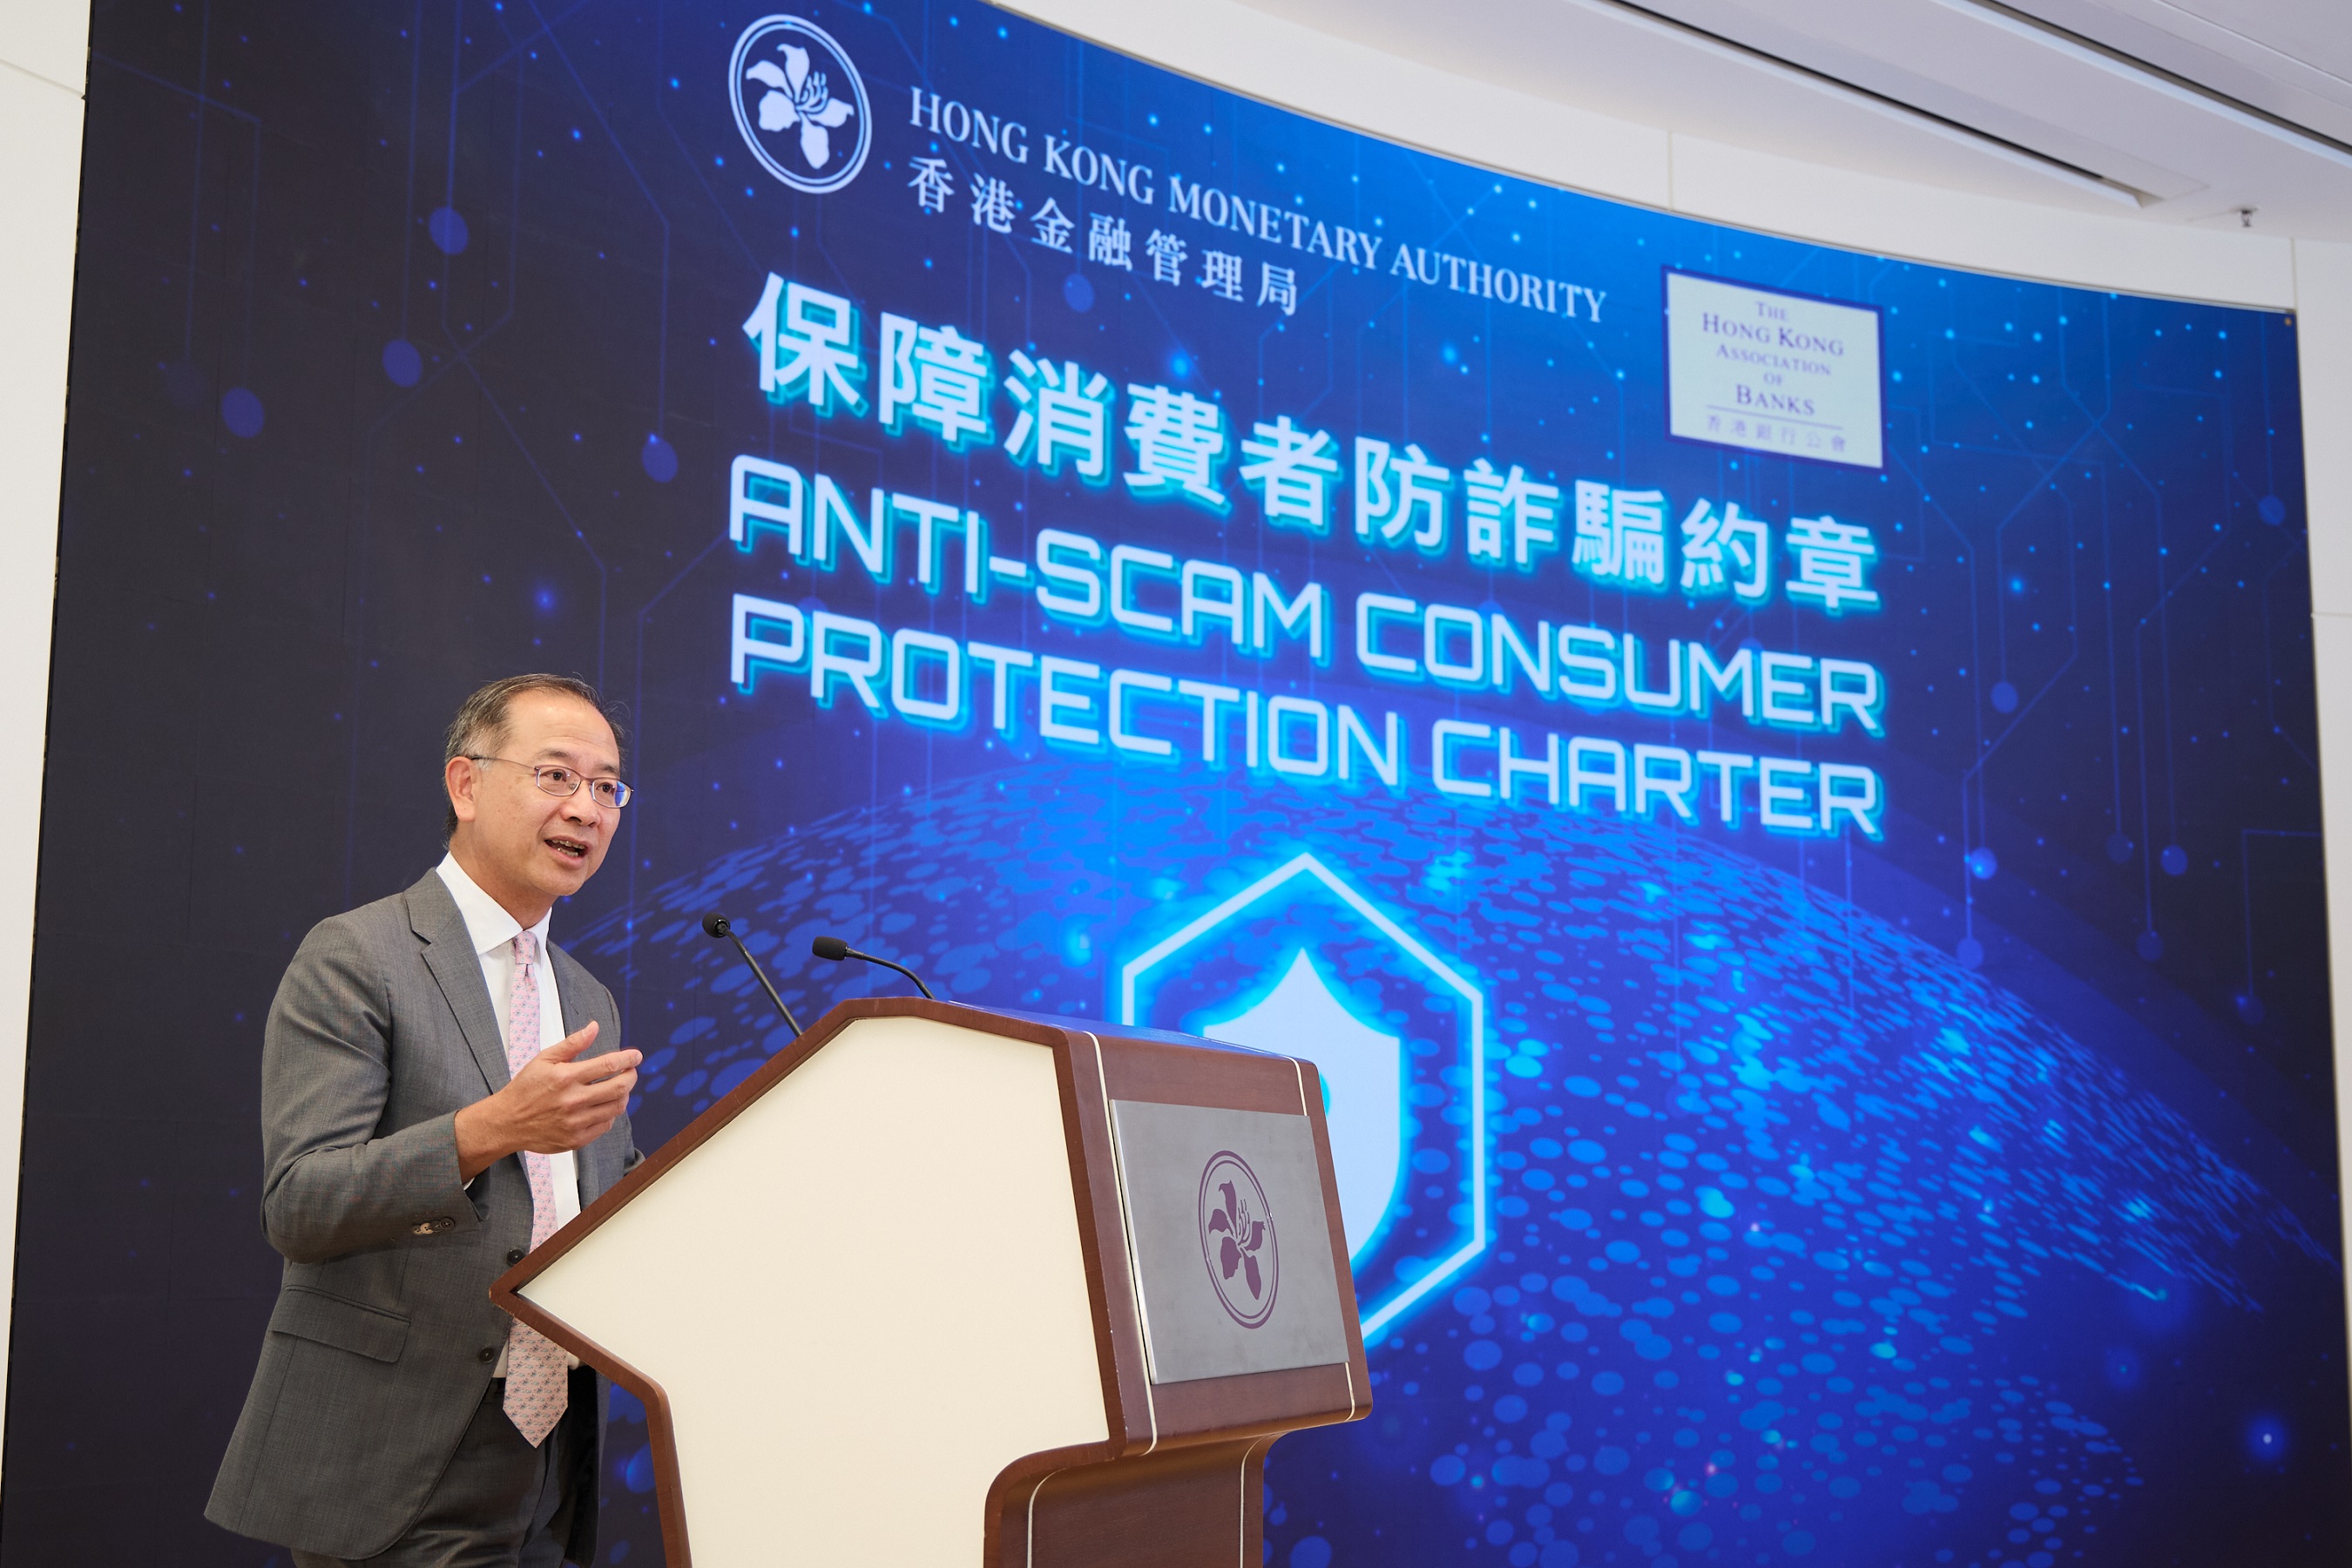 香港金融管理局总裁余伟文于《保障消费者防诈骗约章》的活动上致开幕辞，并介绍约章的主要原则。